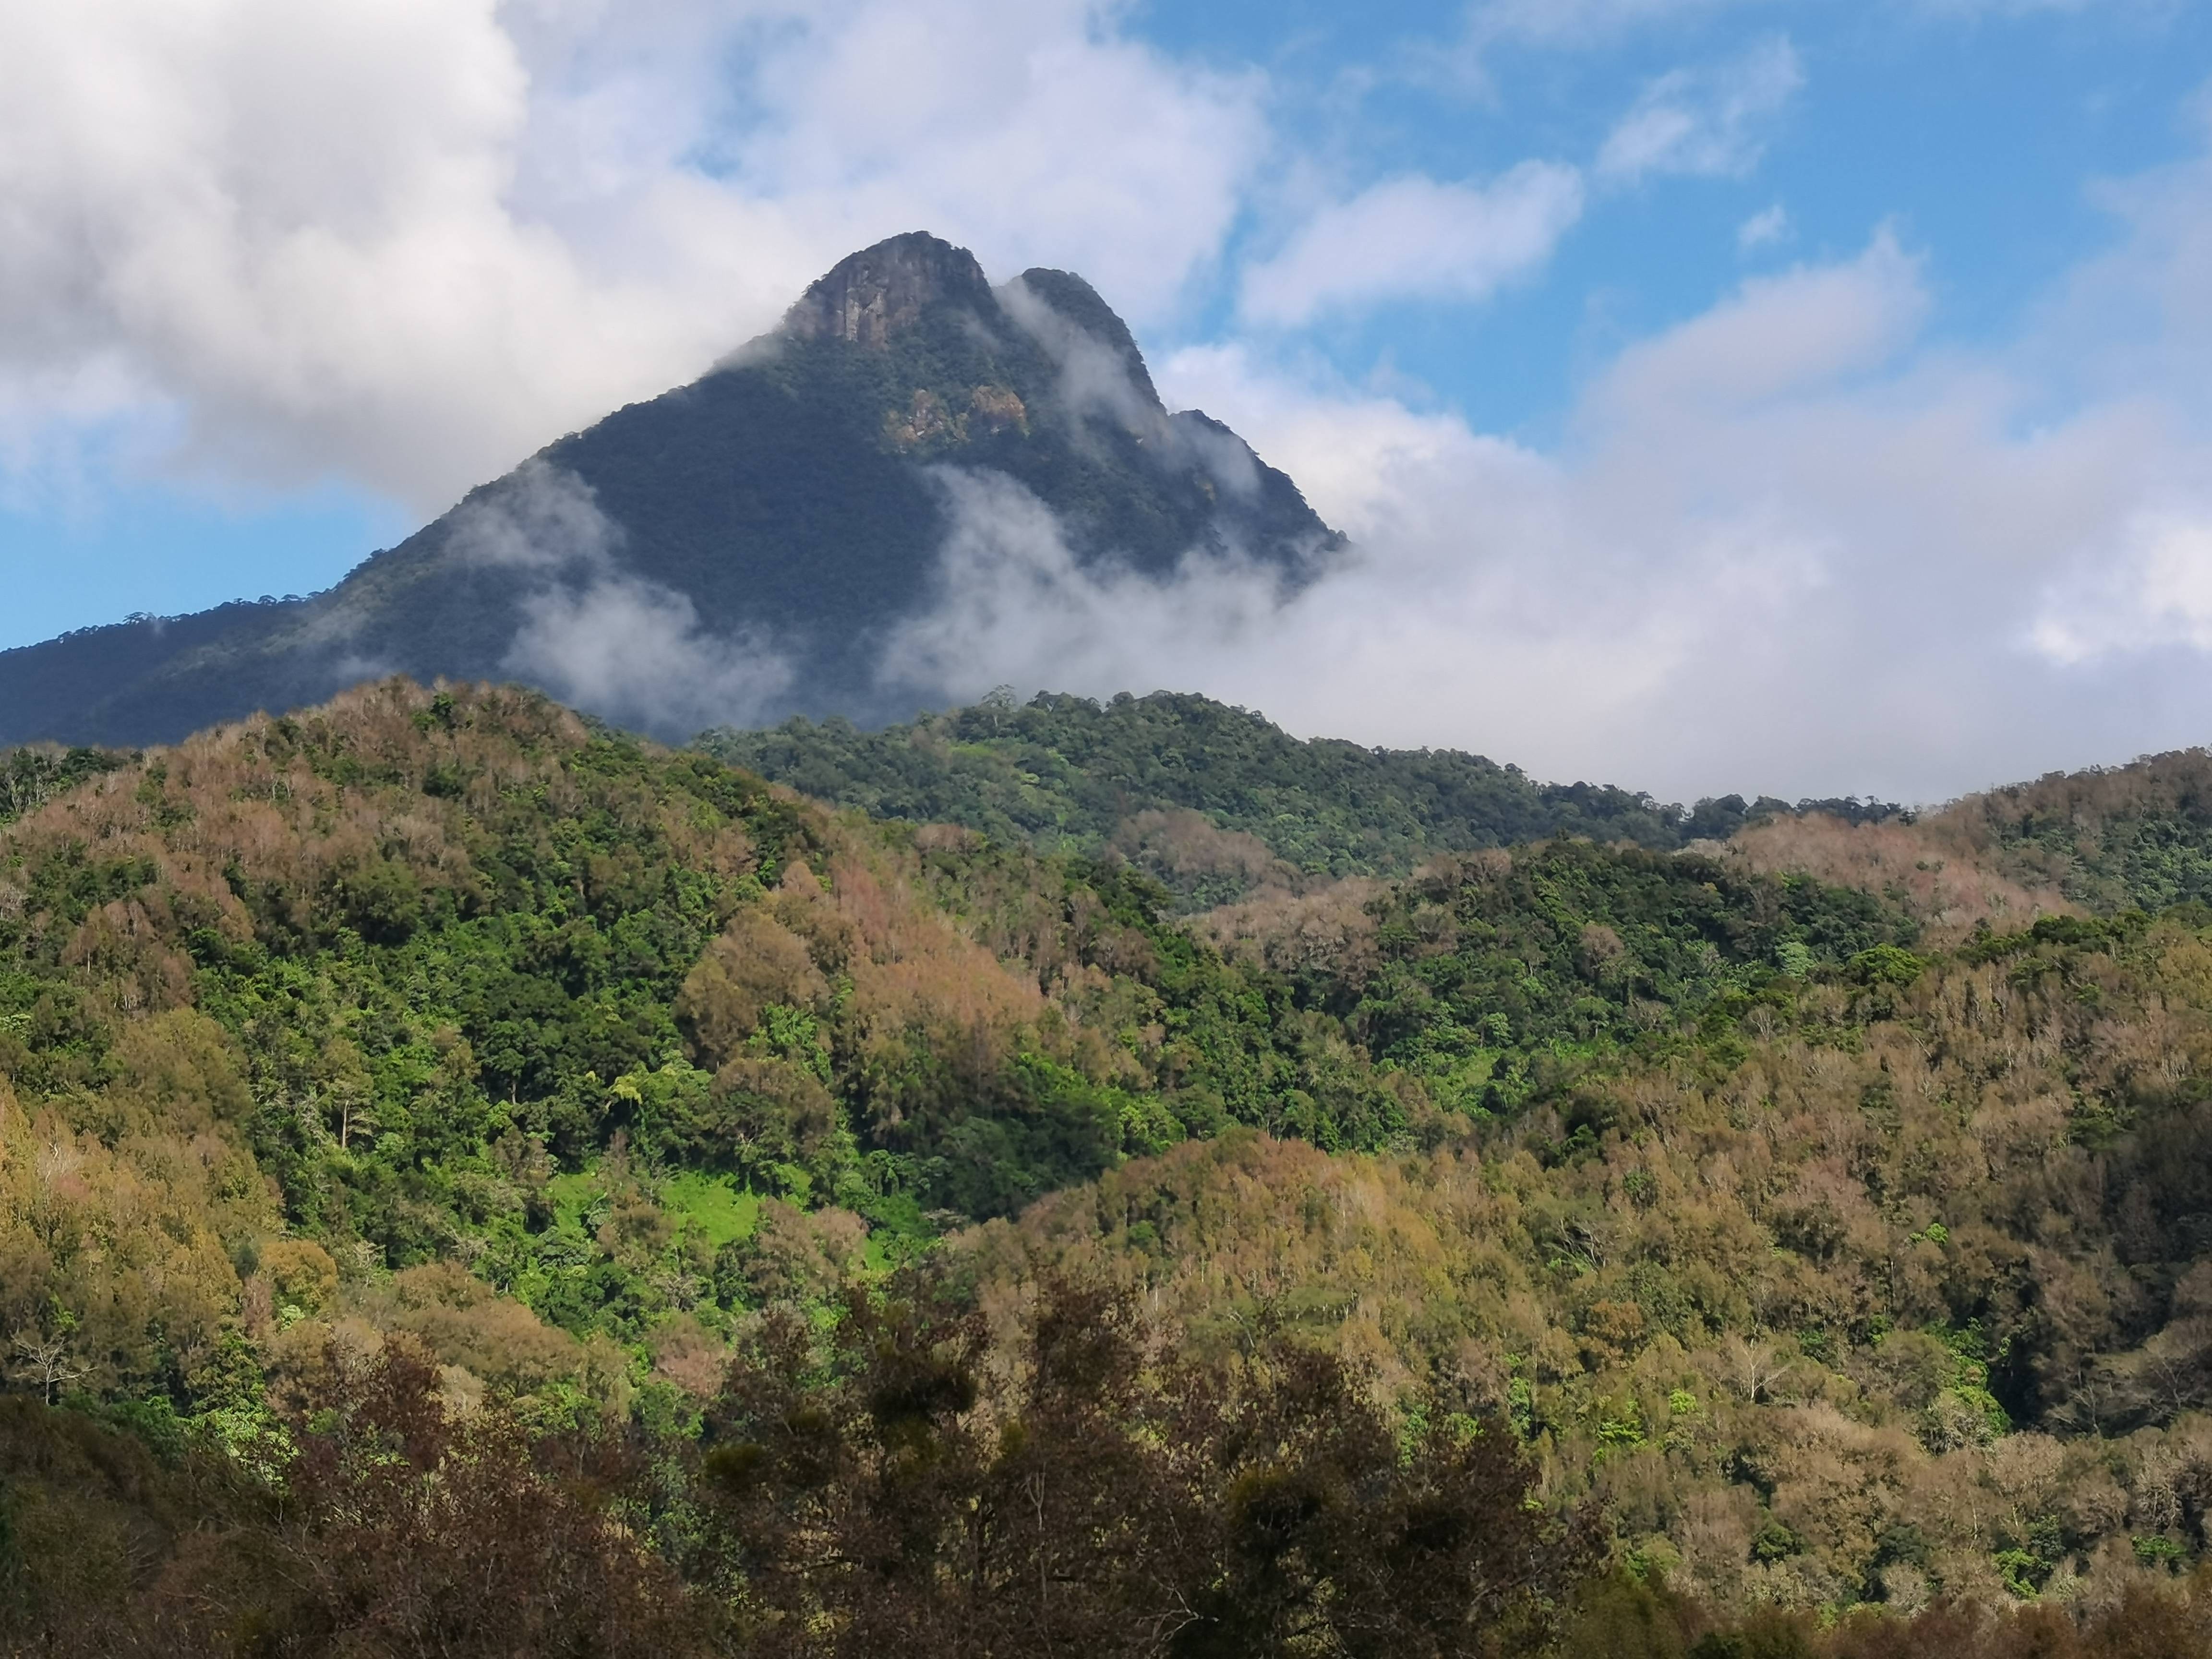 五指山热带雨林风景区还集中了热带山地雨林和热带沟谷雨林的典型景观